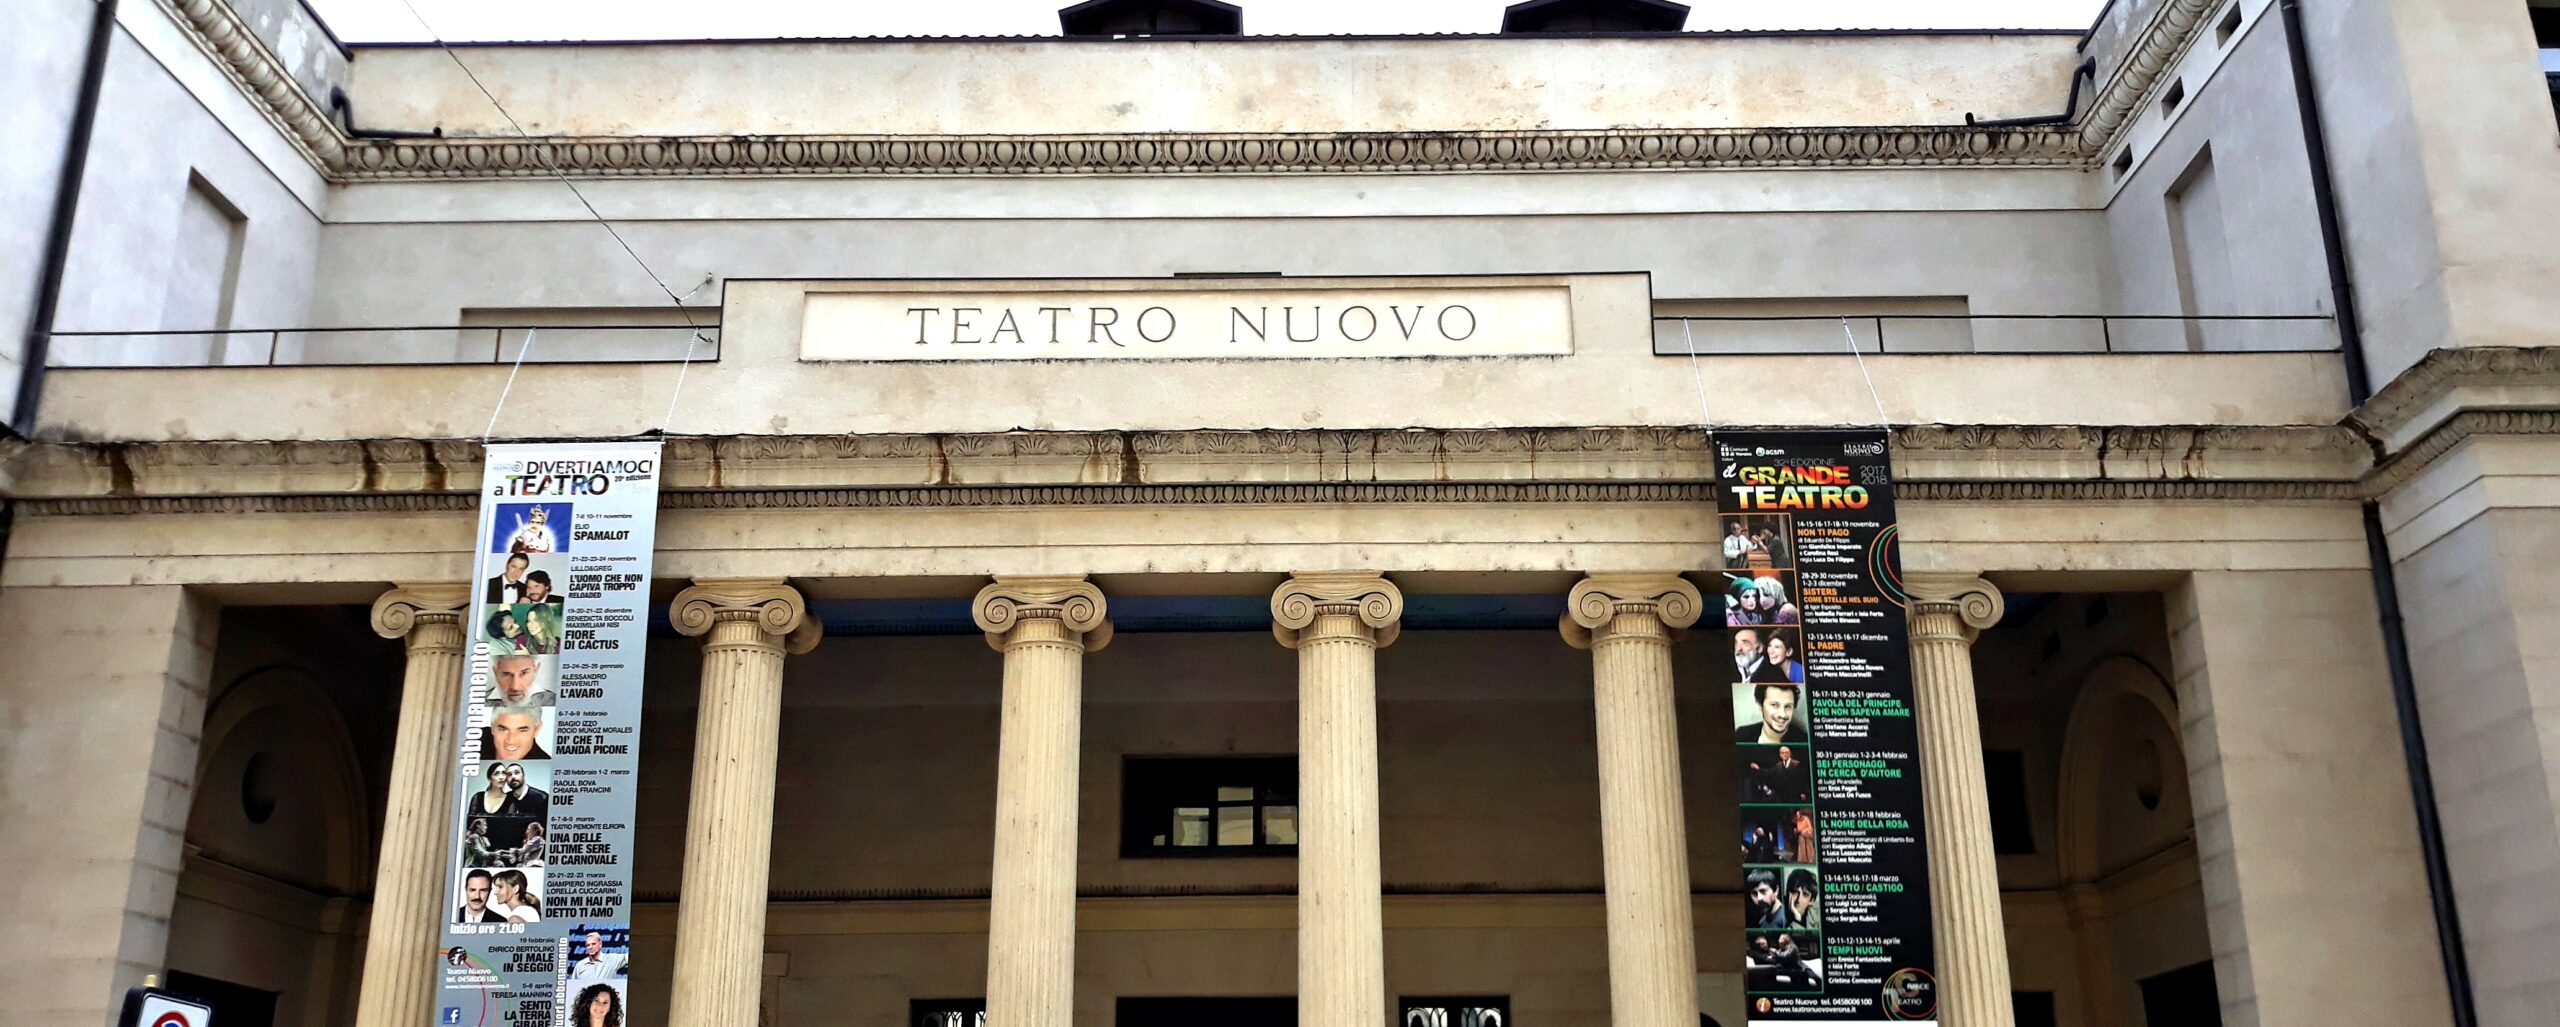 Veronica Pivetti da martedì 15 va in scena al Teatro Nuovo con gli anni ’20 di “Stanno sparando sulla nostra canzone”